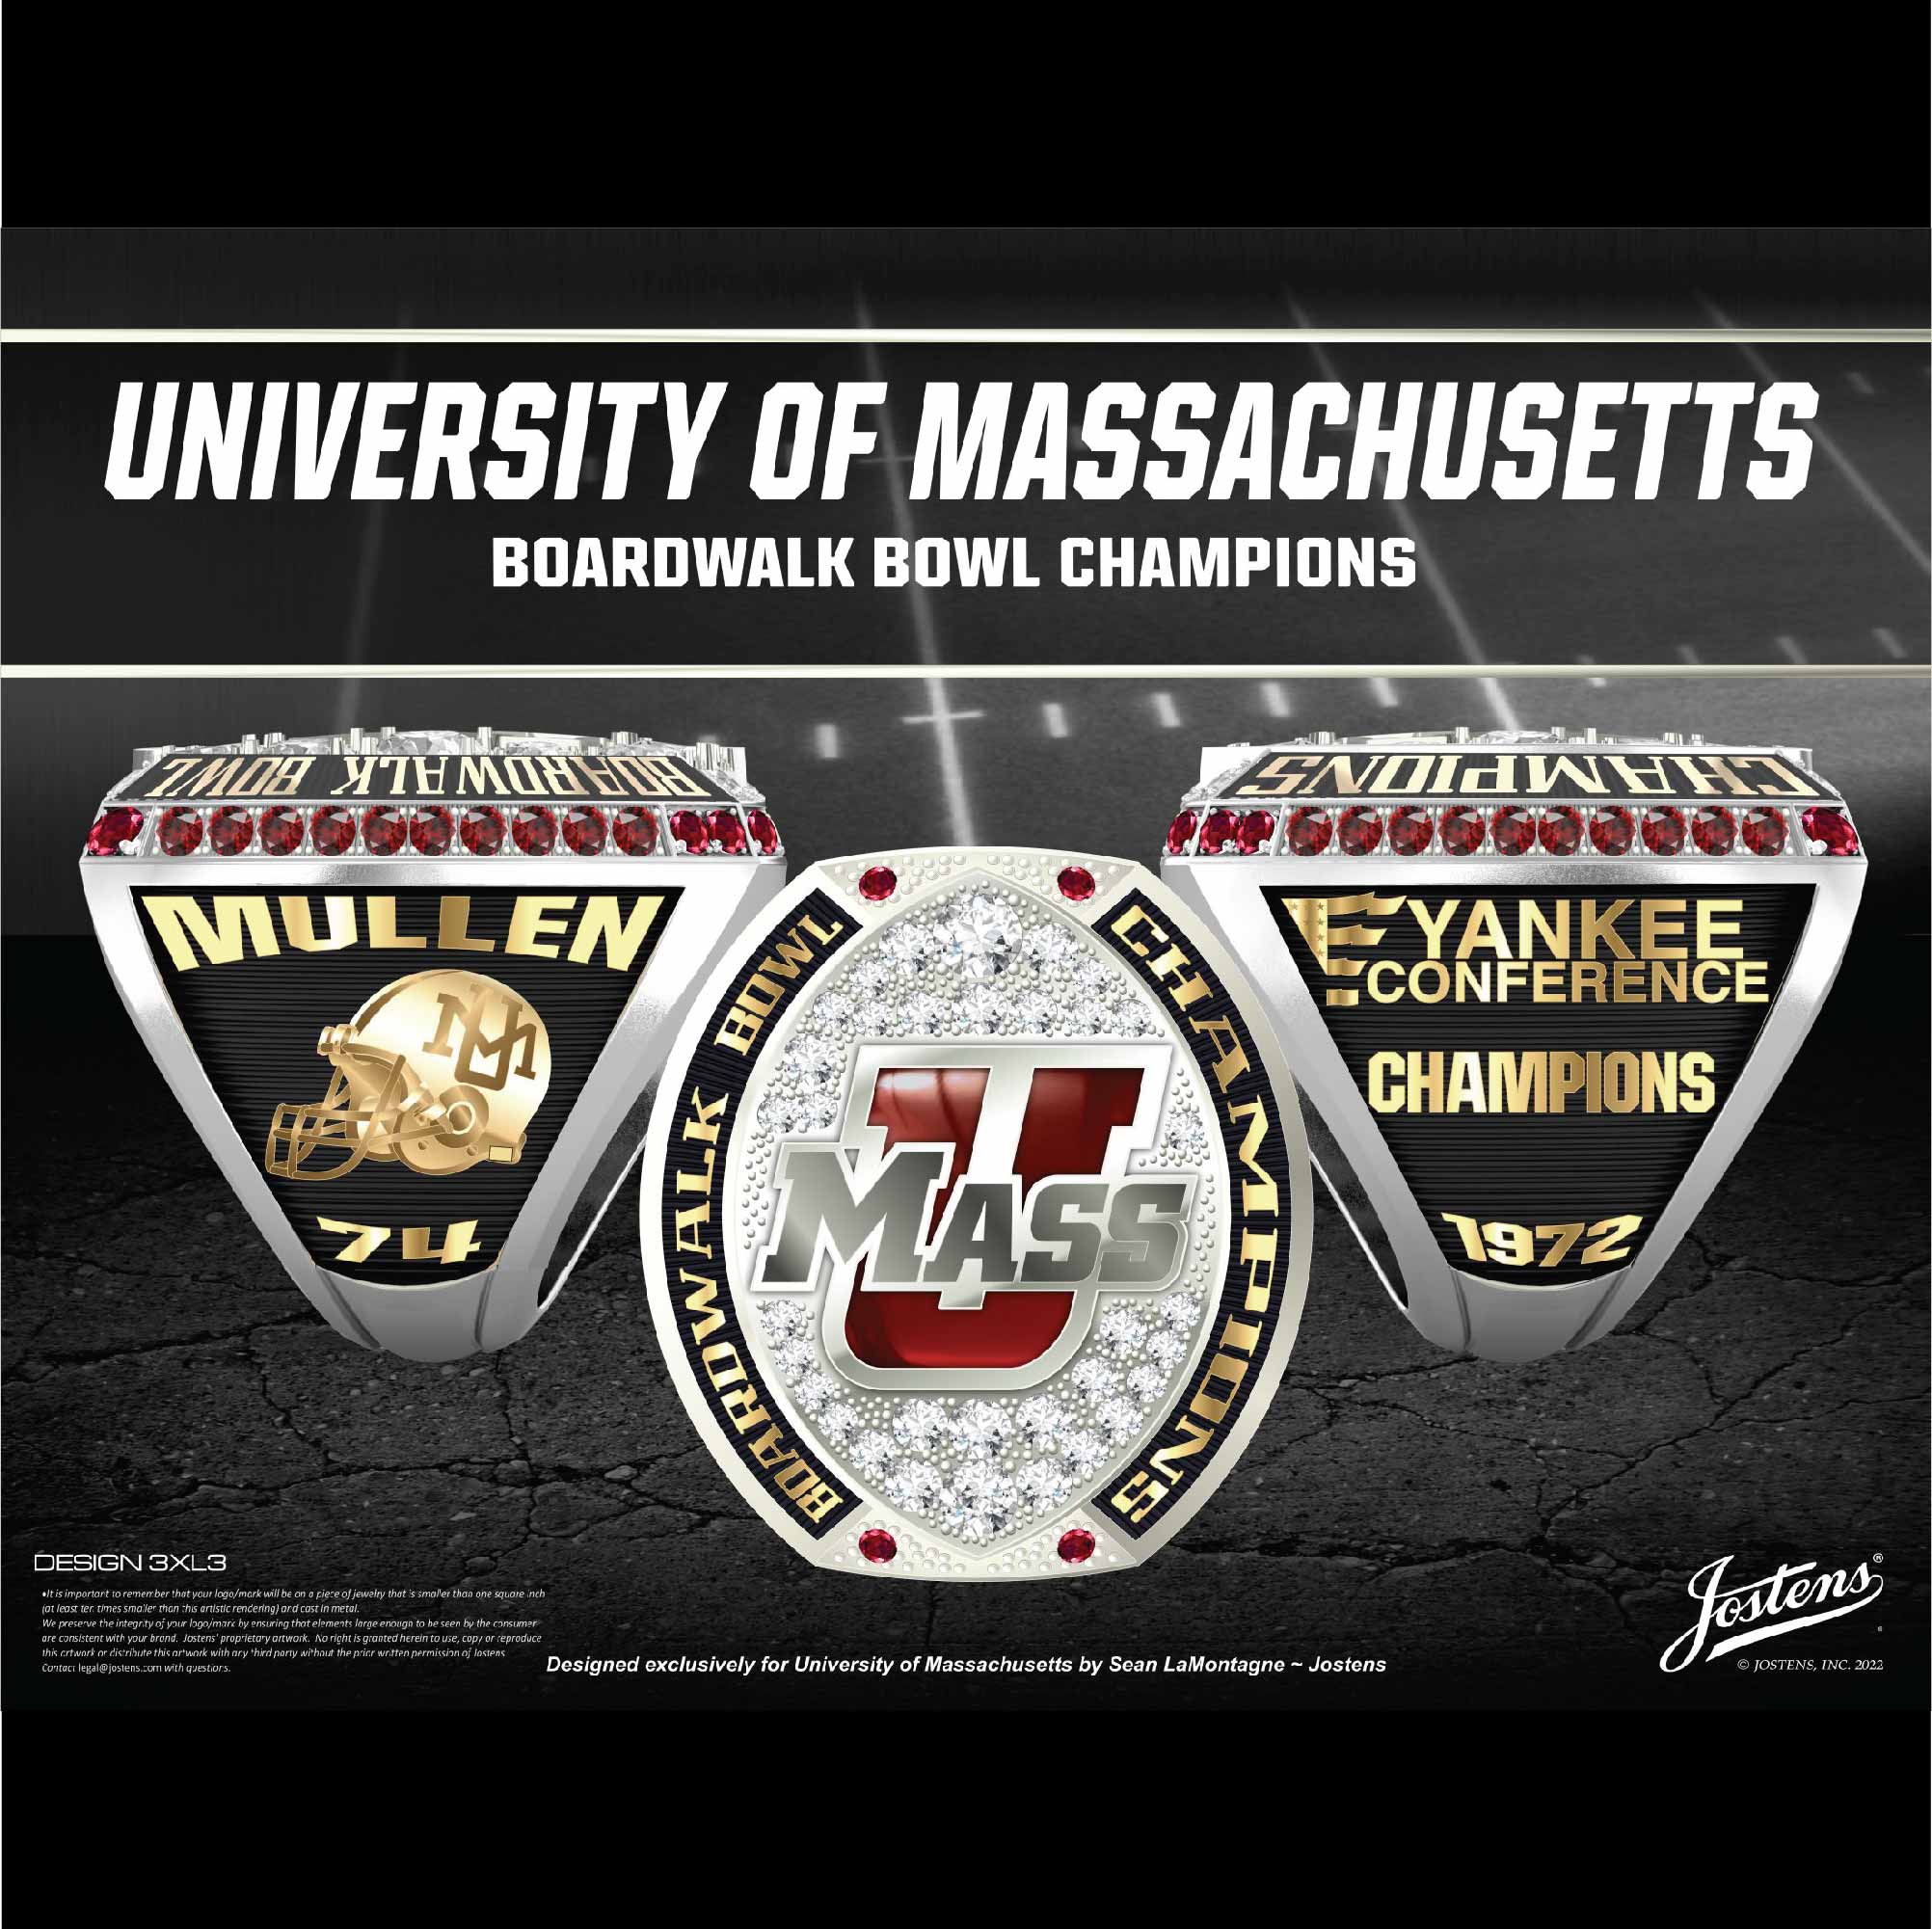 University of Massachusetts Men's Football 1972 Boardwalk Bowl Championship Ring